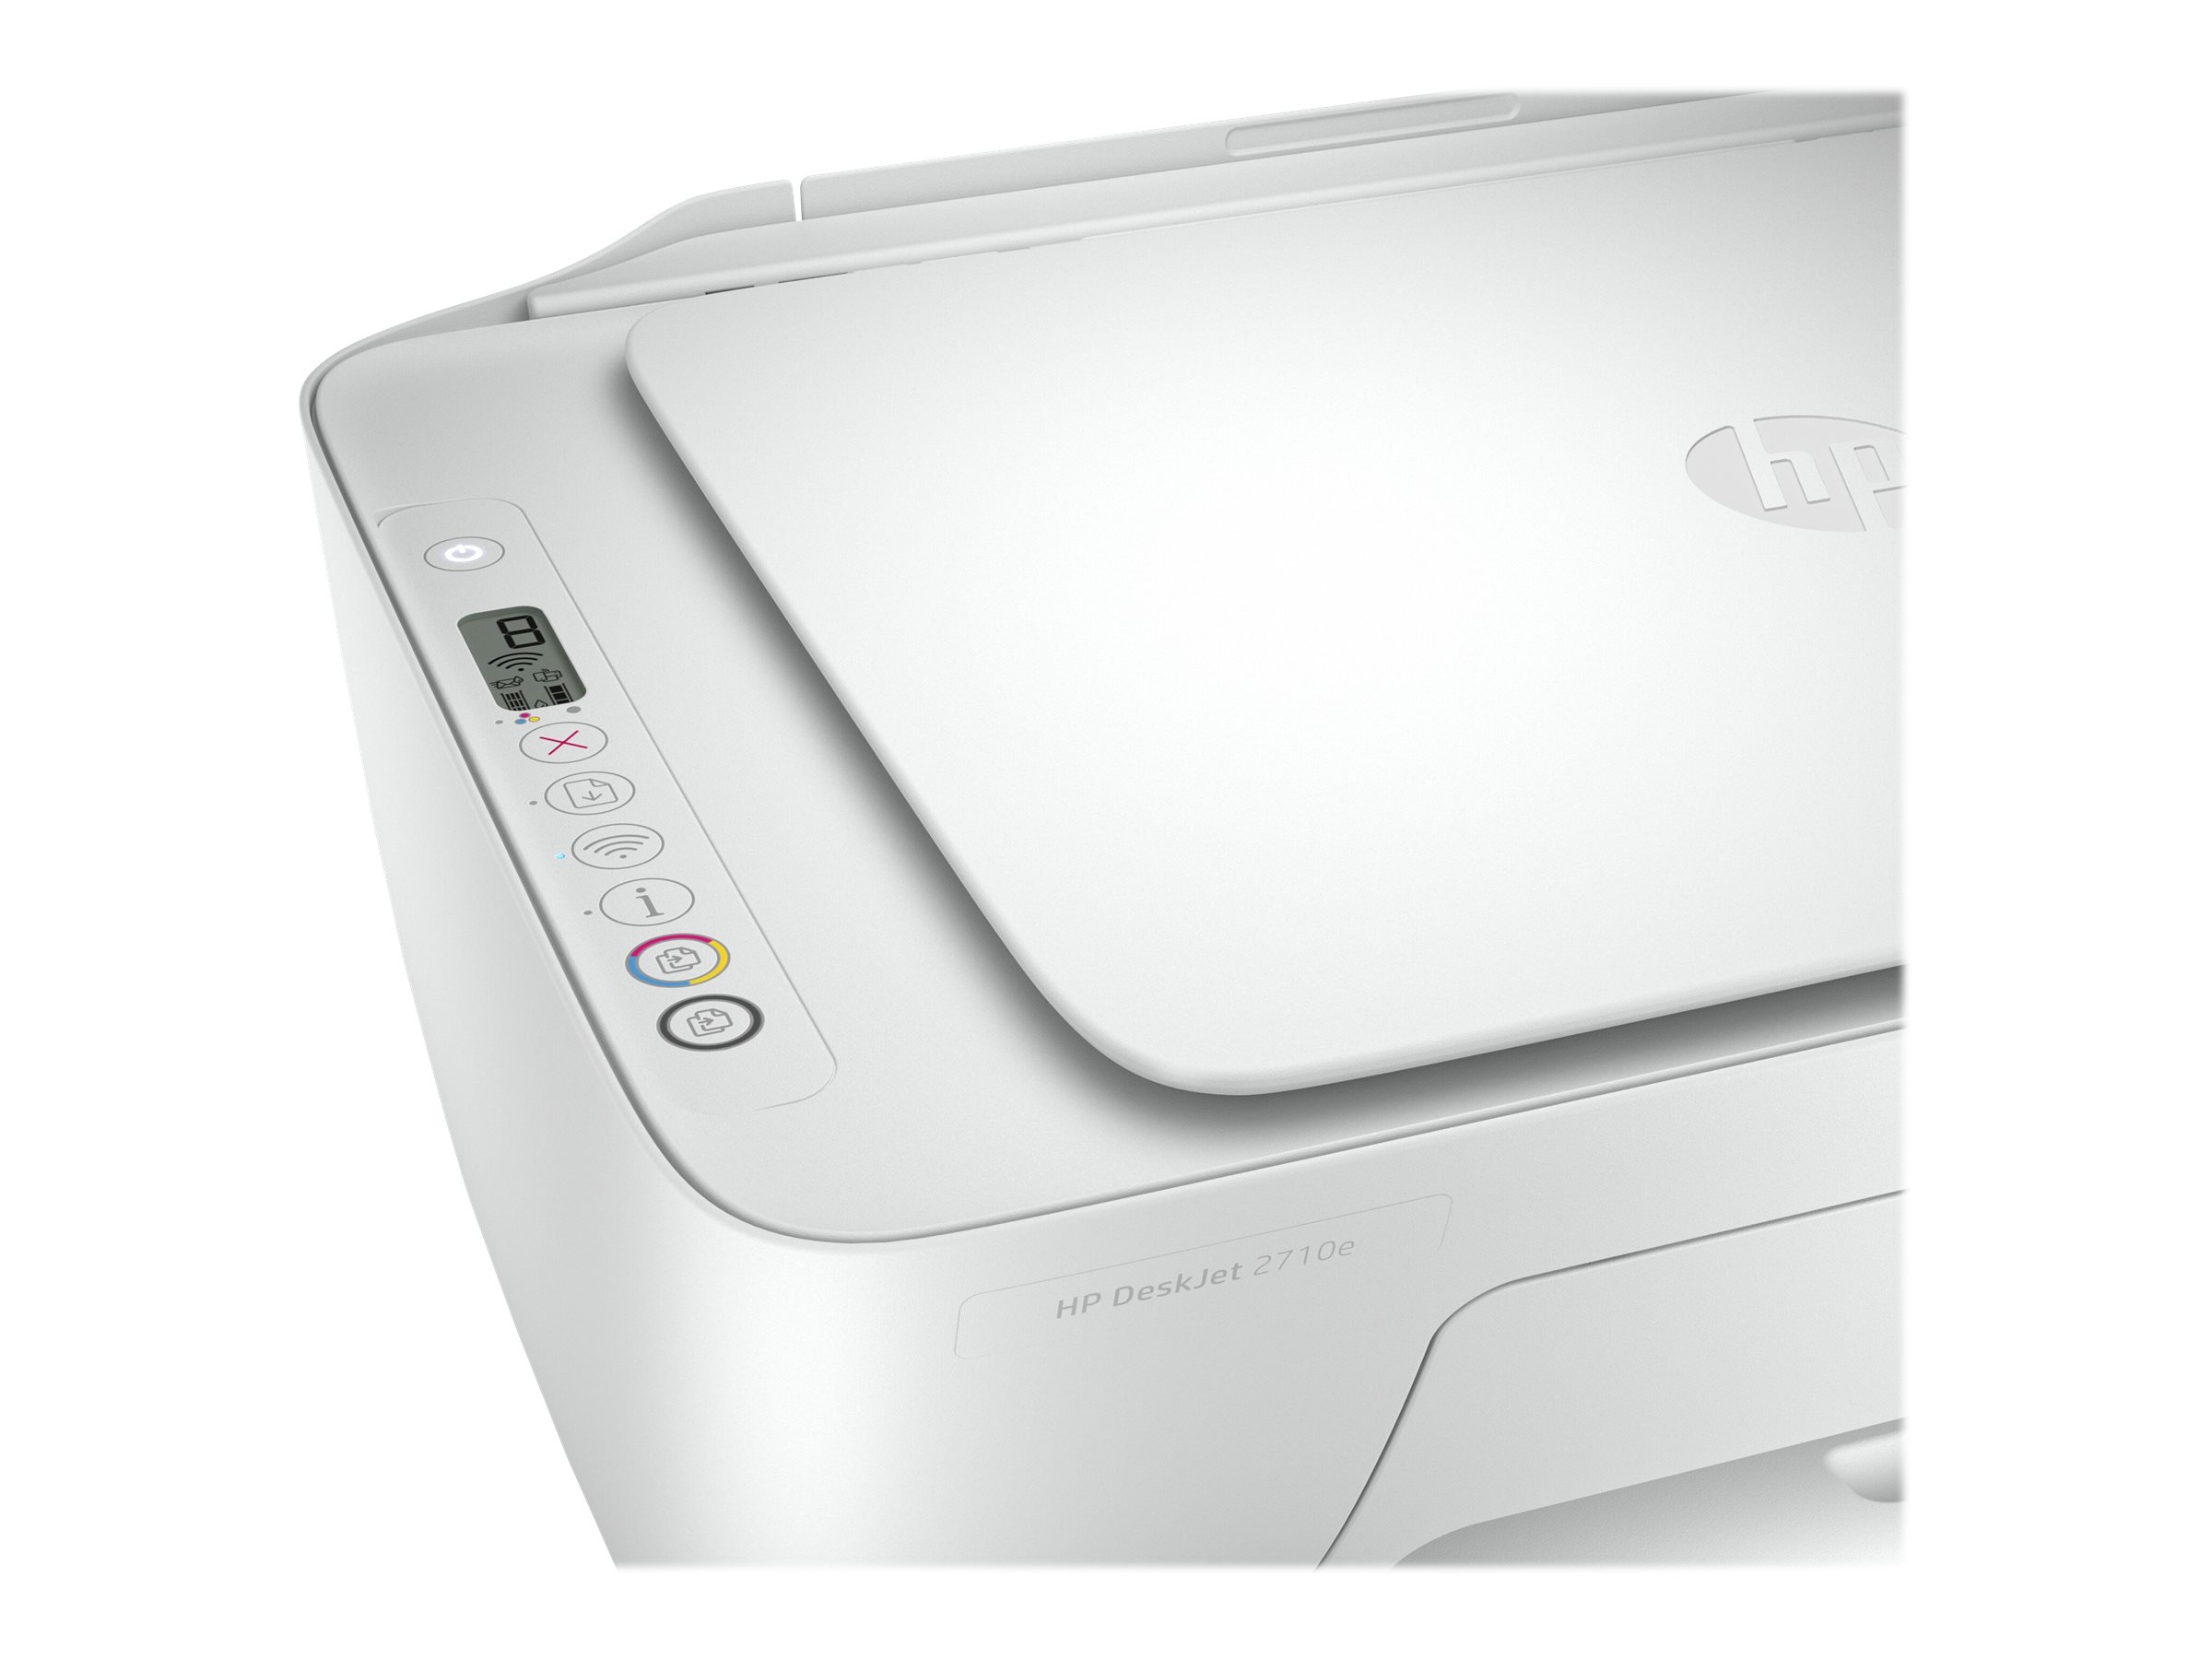 HP Deskjet 2710e All-in-One - Imprimante multifonctions - couleur - jet d'encre - 216 x 297 mm (original) - A4/Legal (support) - jusqu'à 6 ppm (copie) - jusqu'à 7.5 ppm (impression) - 60 feuilles - USB 2.0, Bluetooth, Wi-Fi(n) - blanc - Compatibilité HP Instant Ink - 26K72B#629 - Imprimantes multifonctions